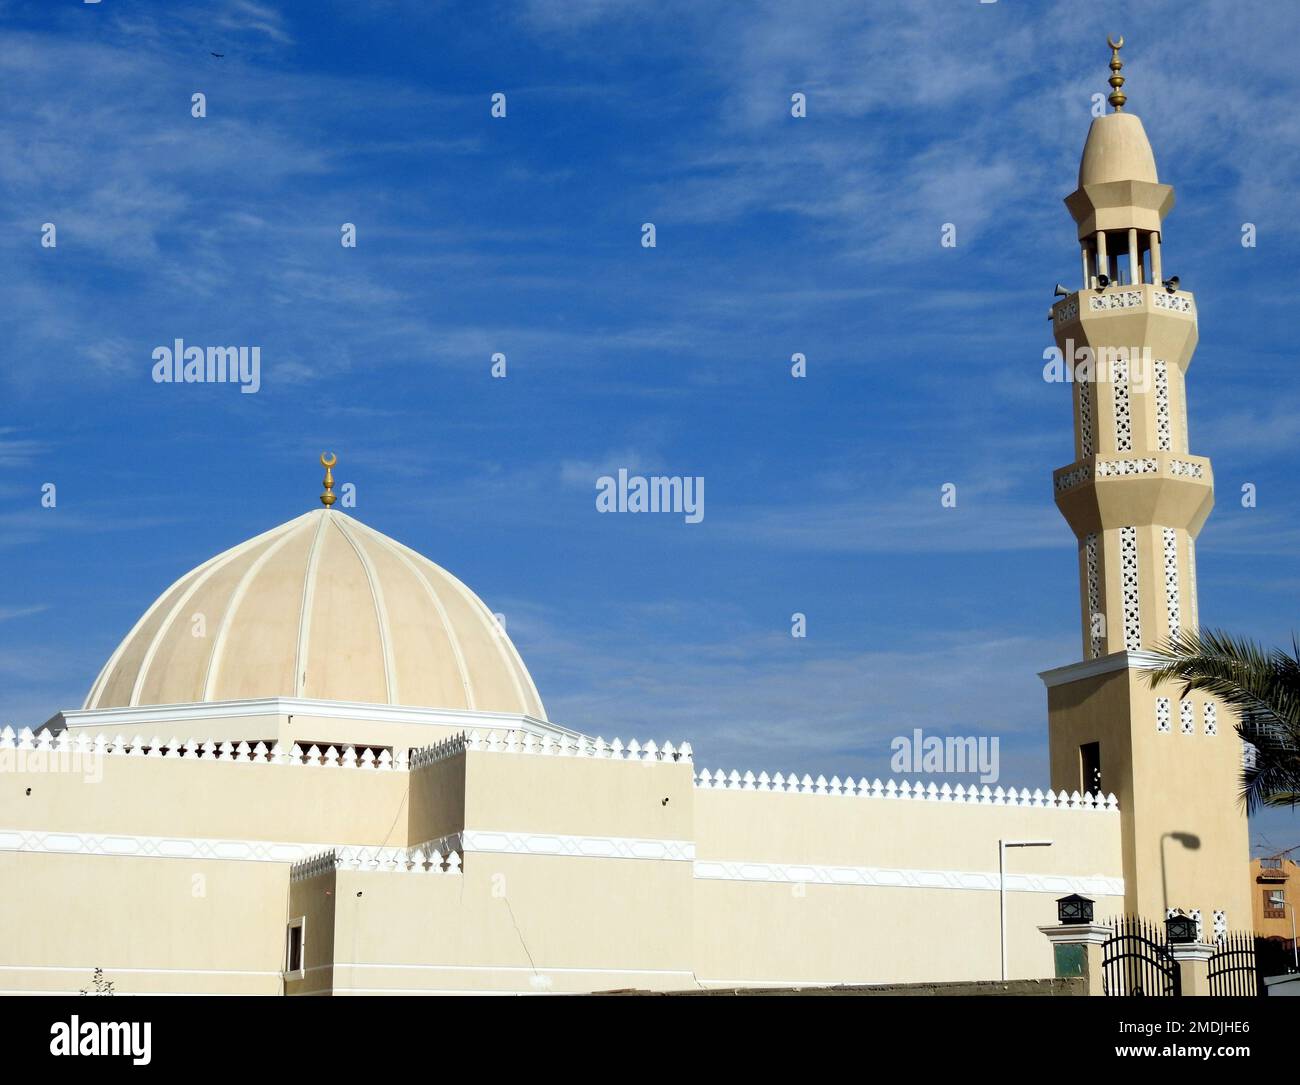 Cupola e minareto di una moschea contro un bel cielo blu con nuvole alla luce del giorno, le Moschee sono il luogo di culto e di preghiere per i musulmani dove si trova Foto Stock